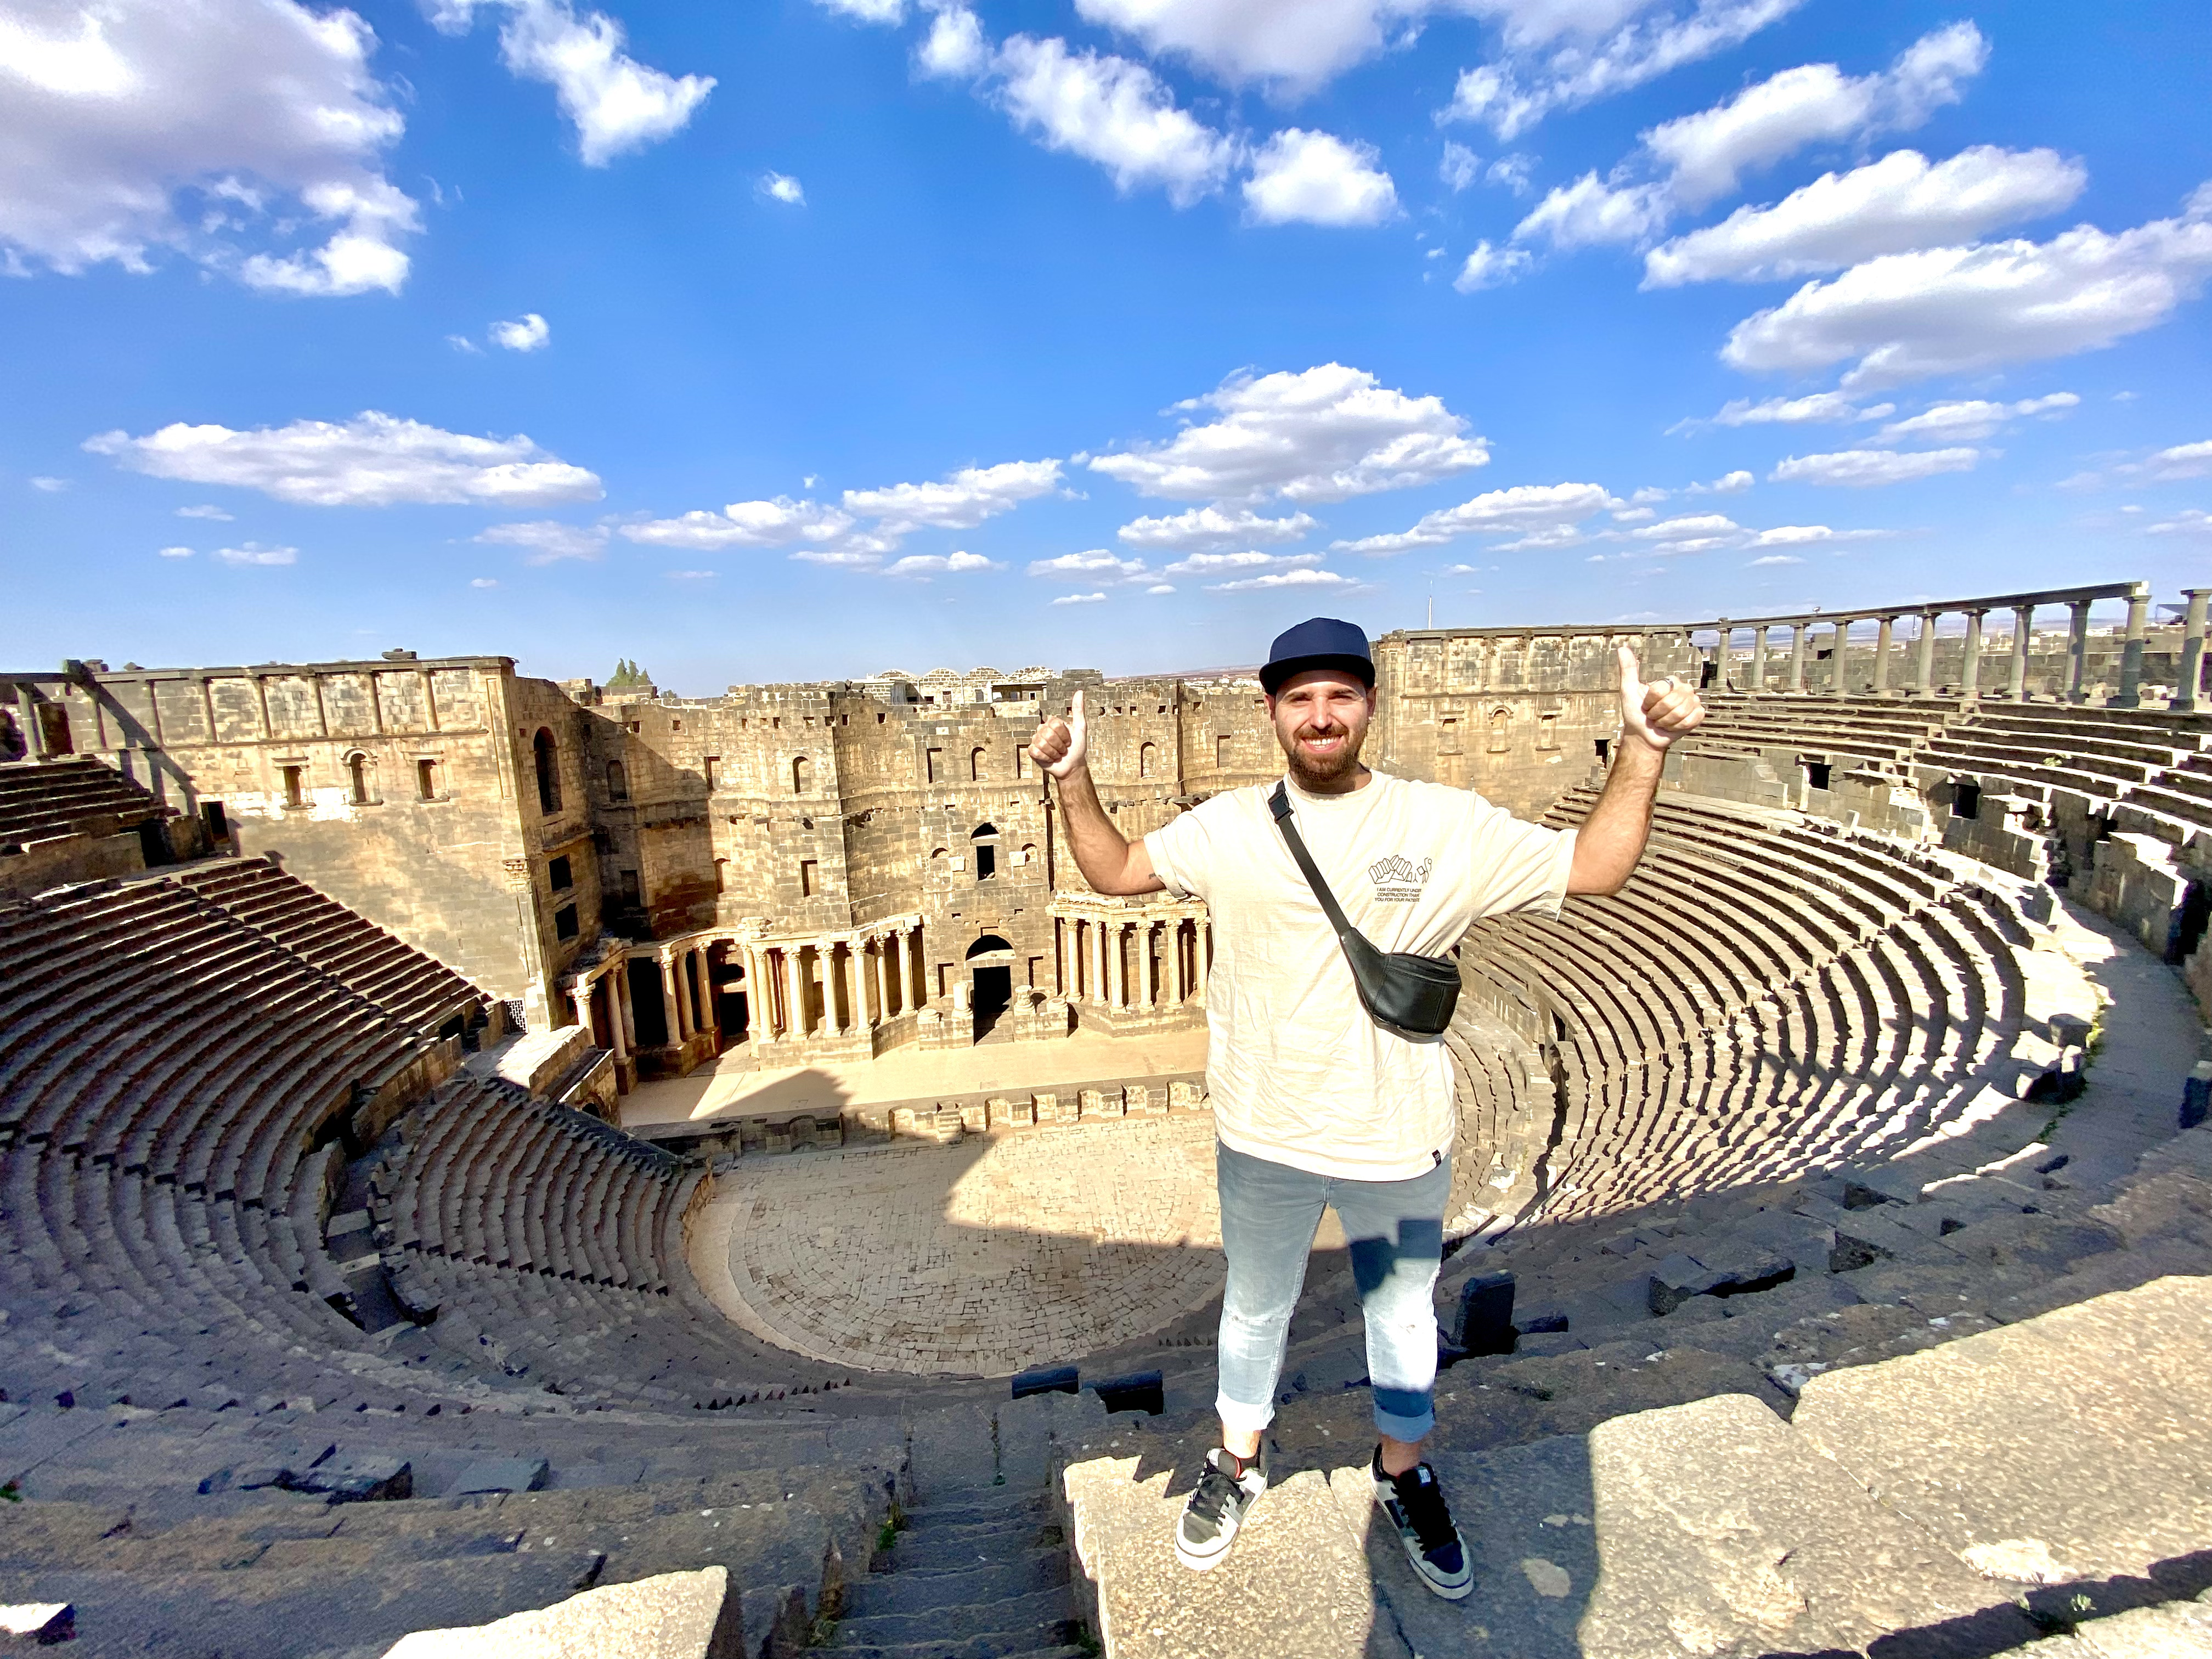 En el Teatro romano de Palmira, el mismo que en 2017 sufrió daños y pérdidas de patrimonio cuando la organización yihadista Estado Islámico (ISIS, por sus siglas en inglés) detonó explosivos